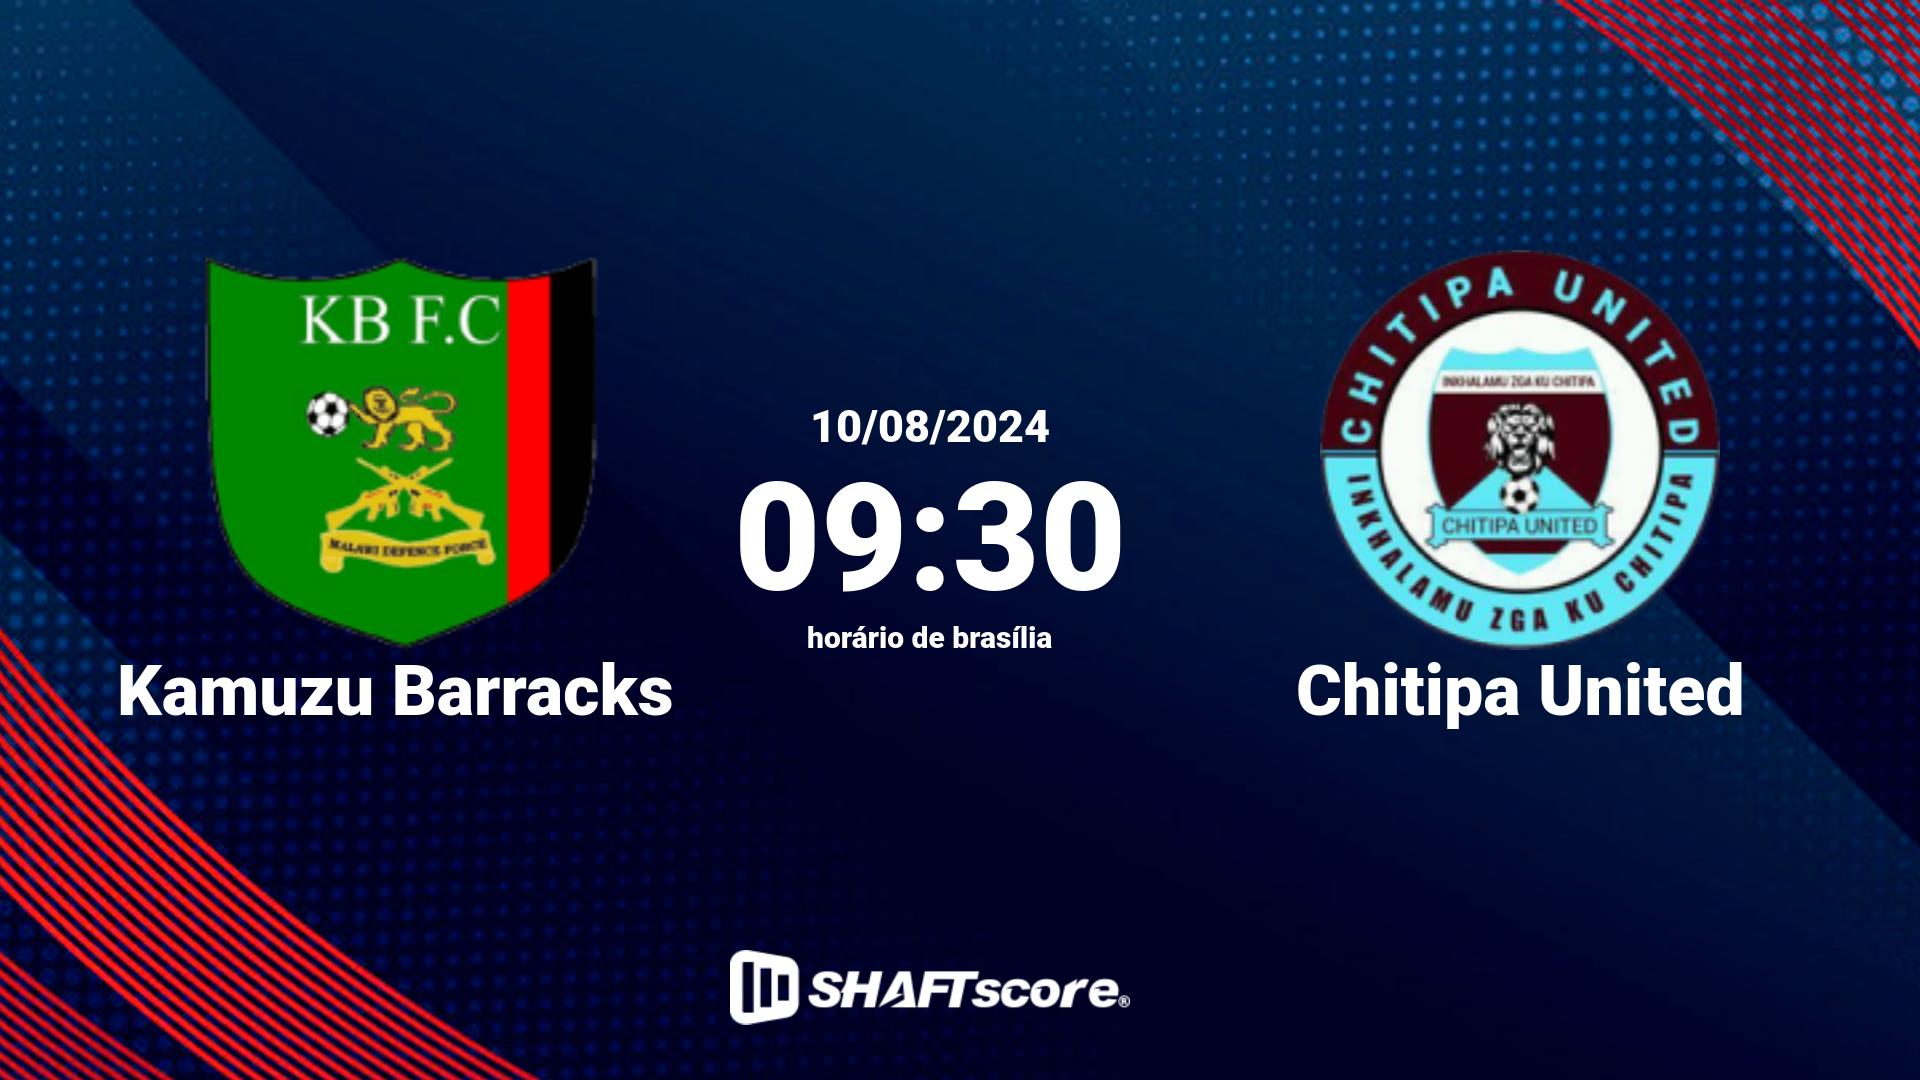 Estatísticas do jogo Kamuzu Barracks vs Chitipa United 10.08 09:30